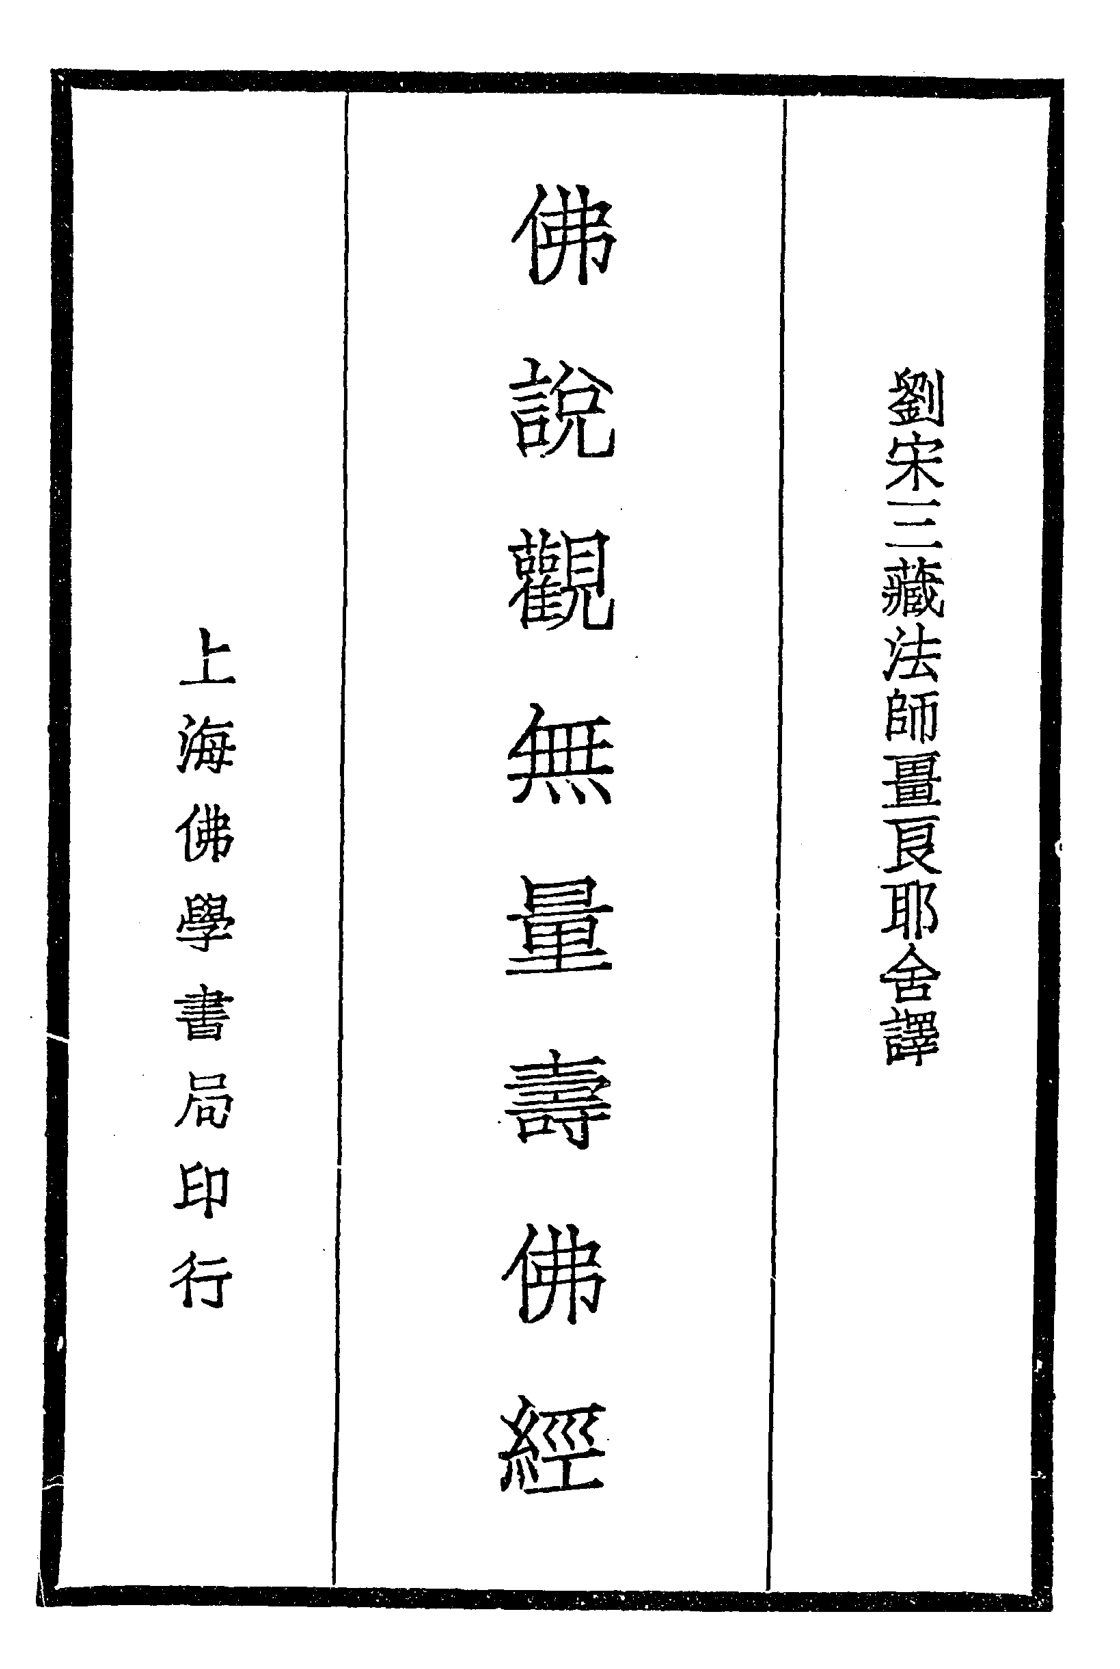 Foshuo guan wuliang shou Fo jing 1935.png